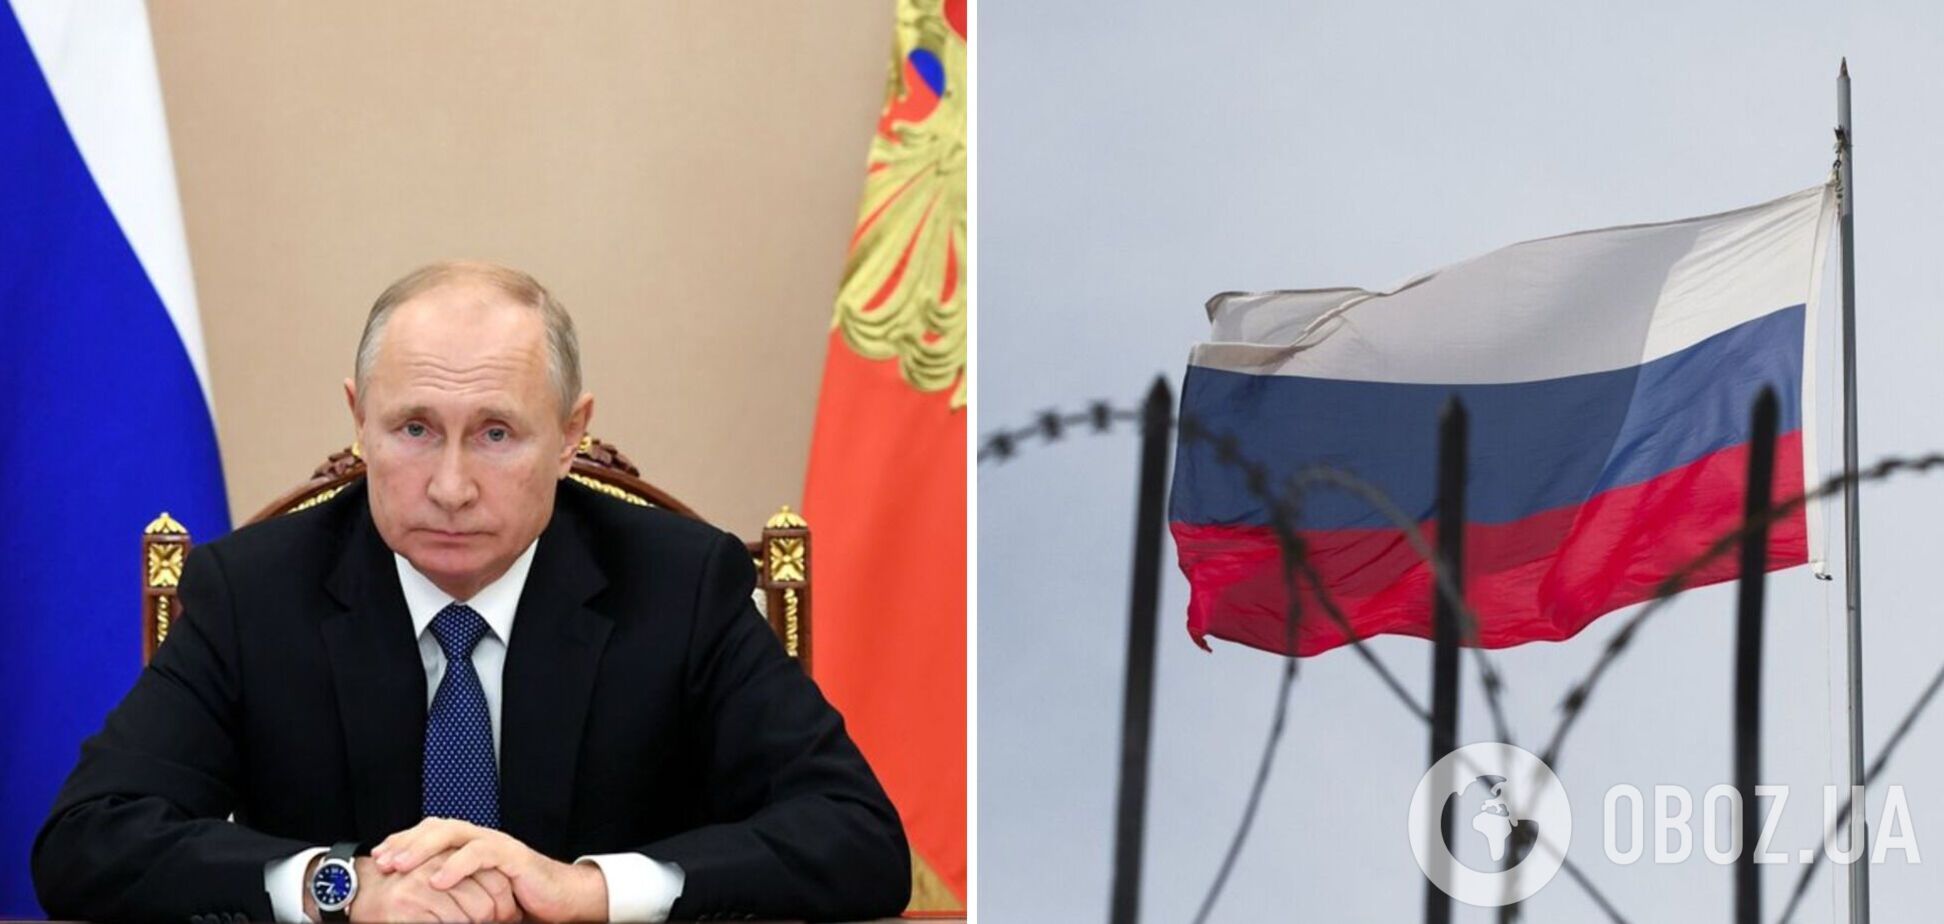 Шапито по-кремлевски: трон под Путиным зашатался